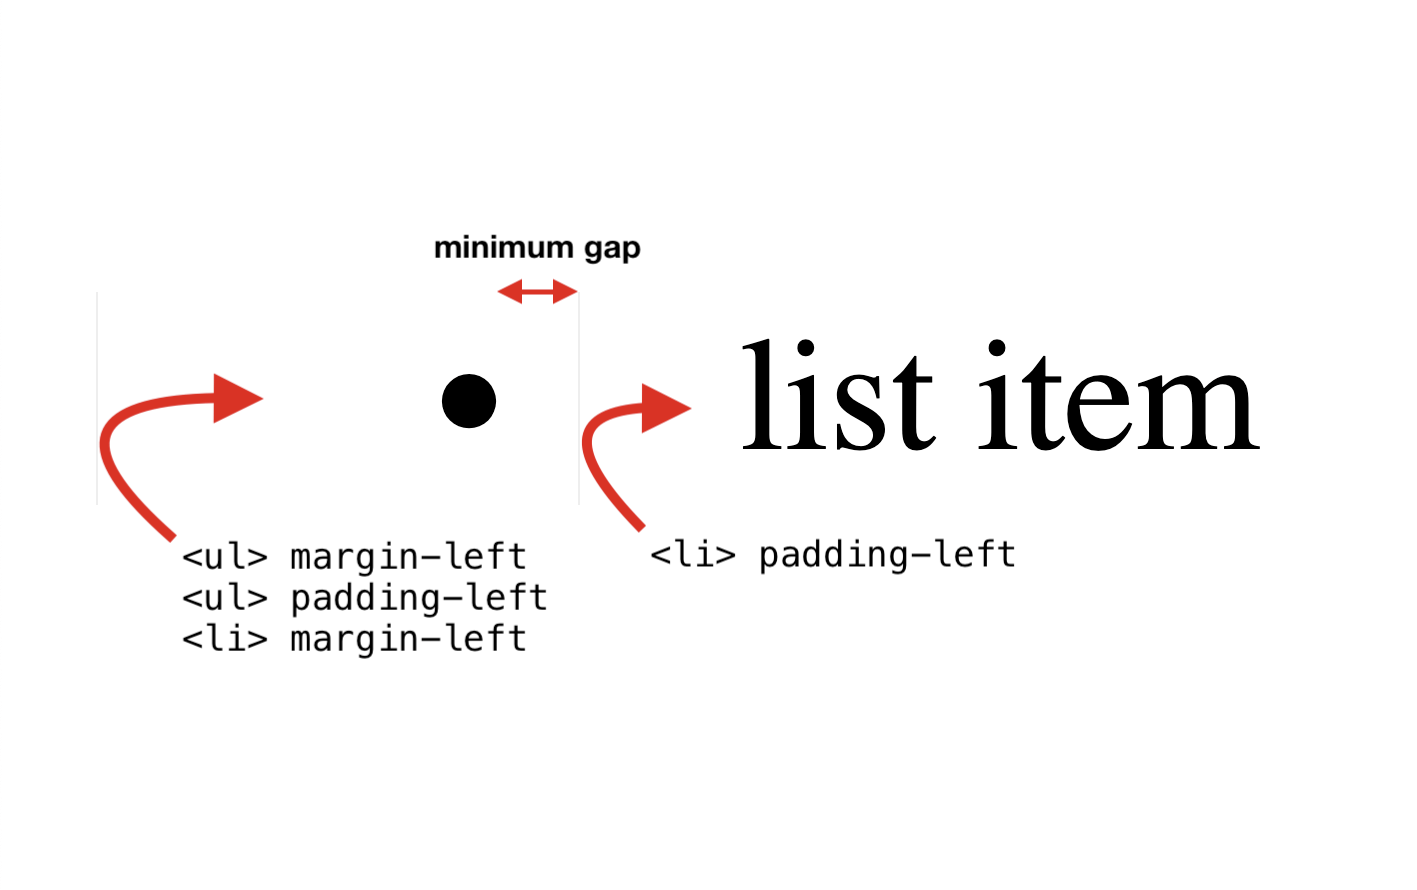 처음 세 가지 속성: UL margin-left, UL padding-left, LI margin-left. 네 번째 속성: LI 패딩-왼쪽.